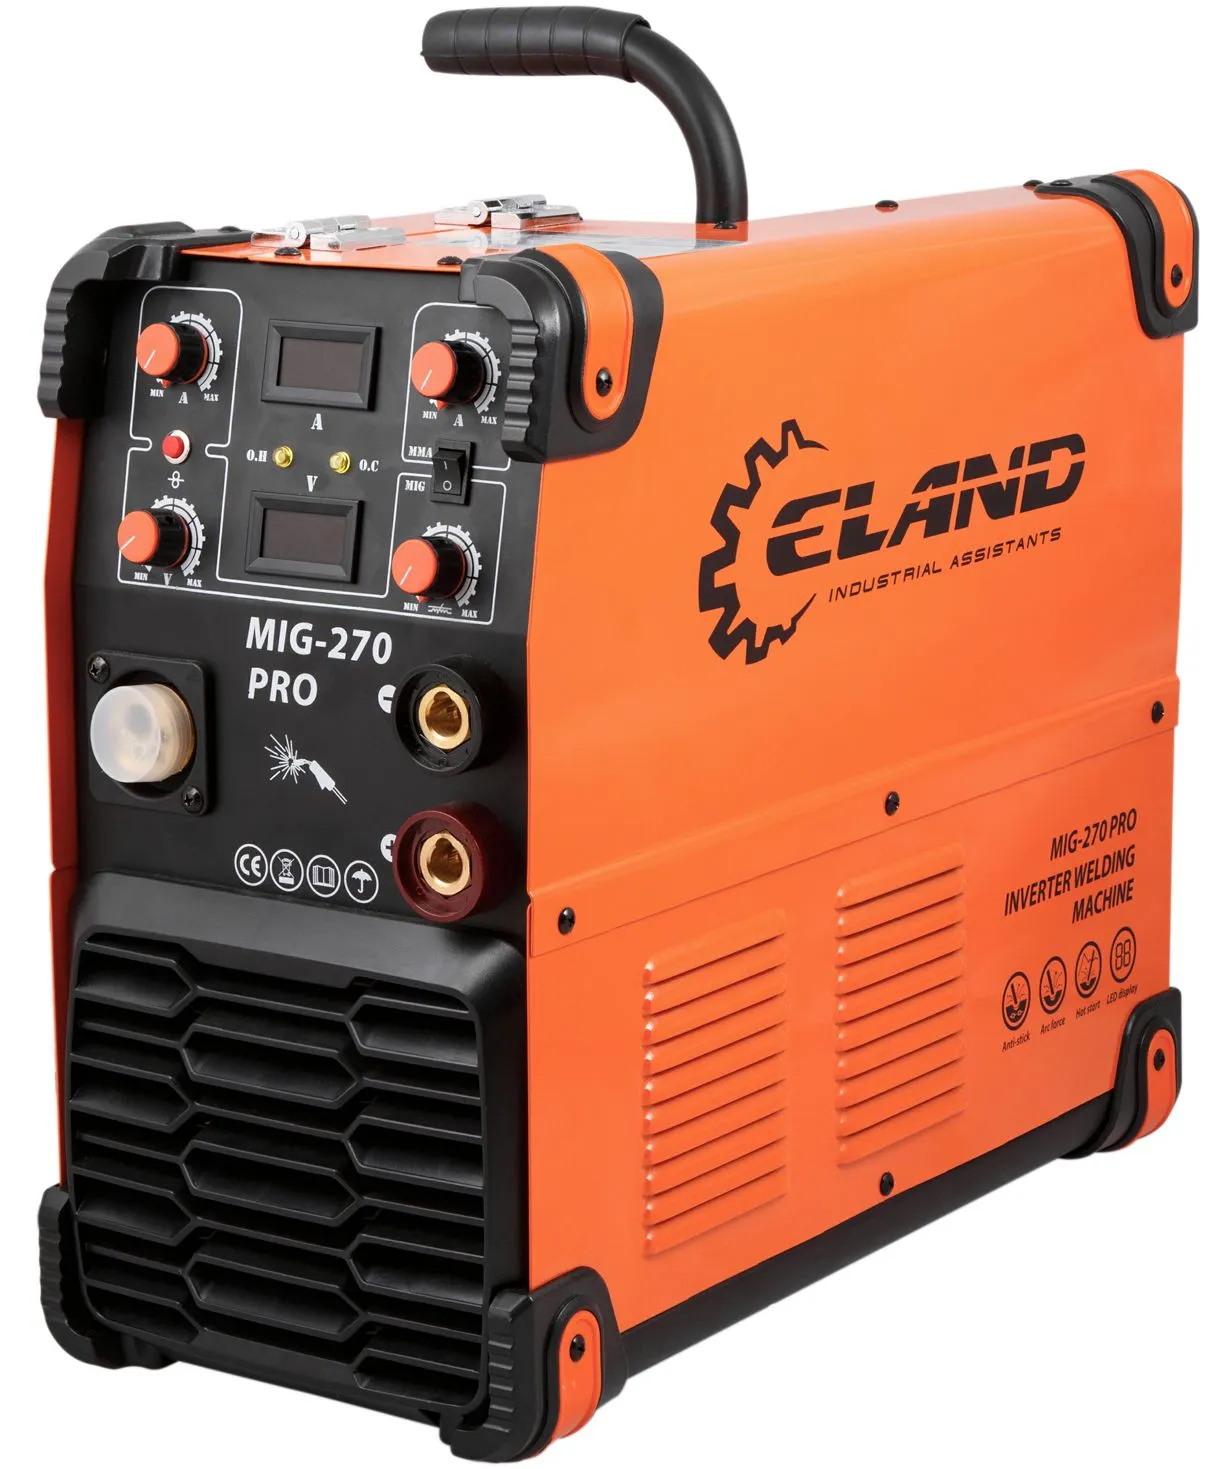 Eland MIG-270 Pro